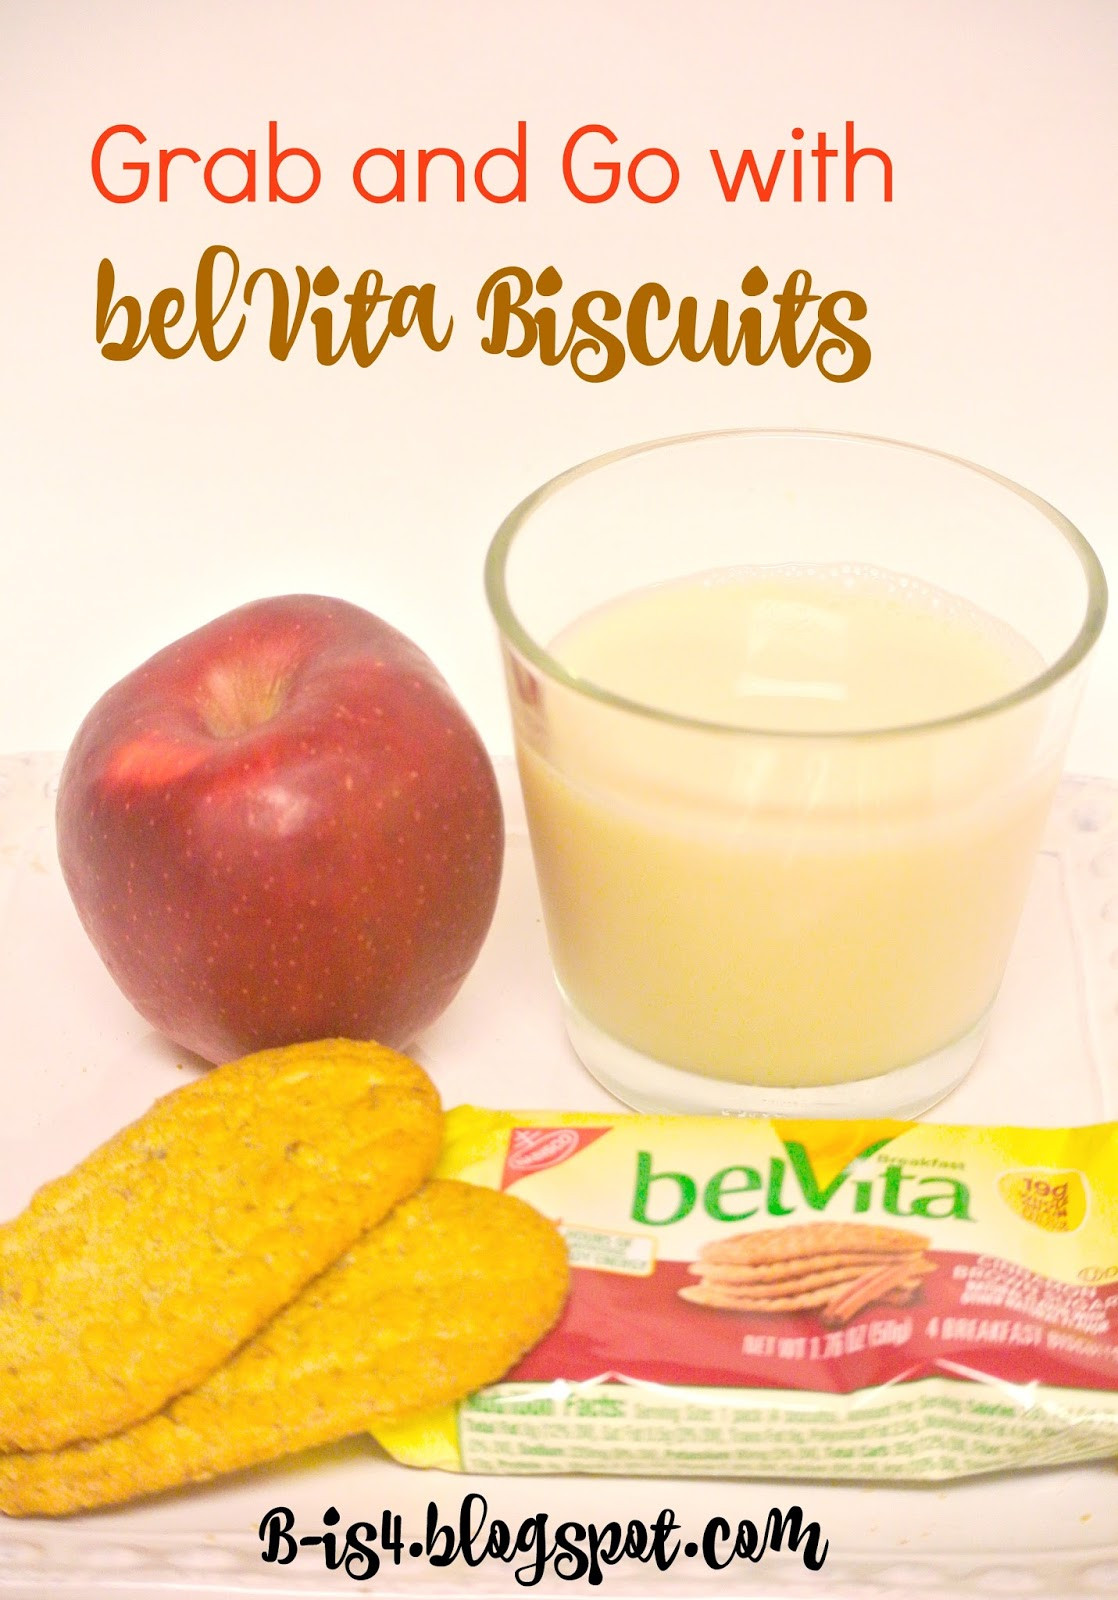 Belvita Breakfast Biscuits Healthy
 B is 4 Grab & Go Meals with belVita Biscuits